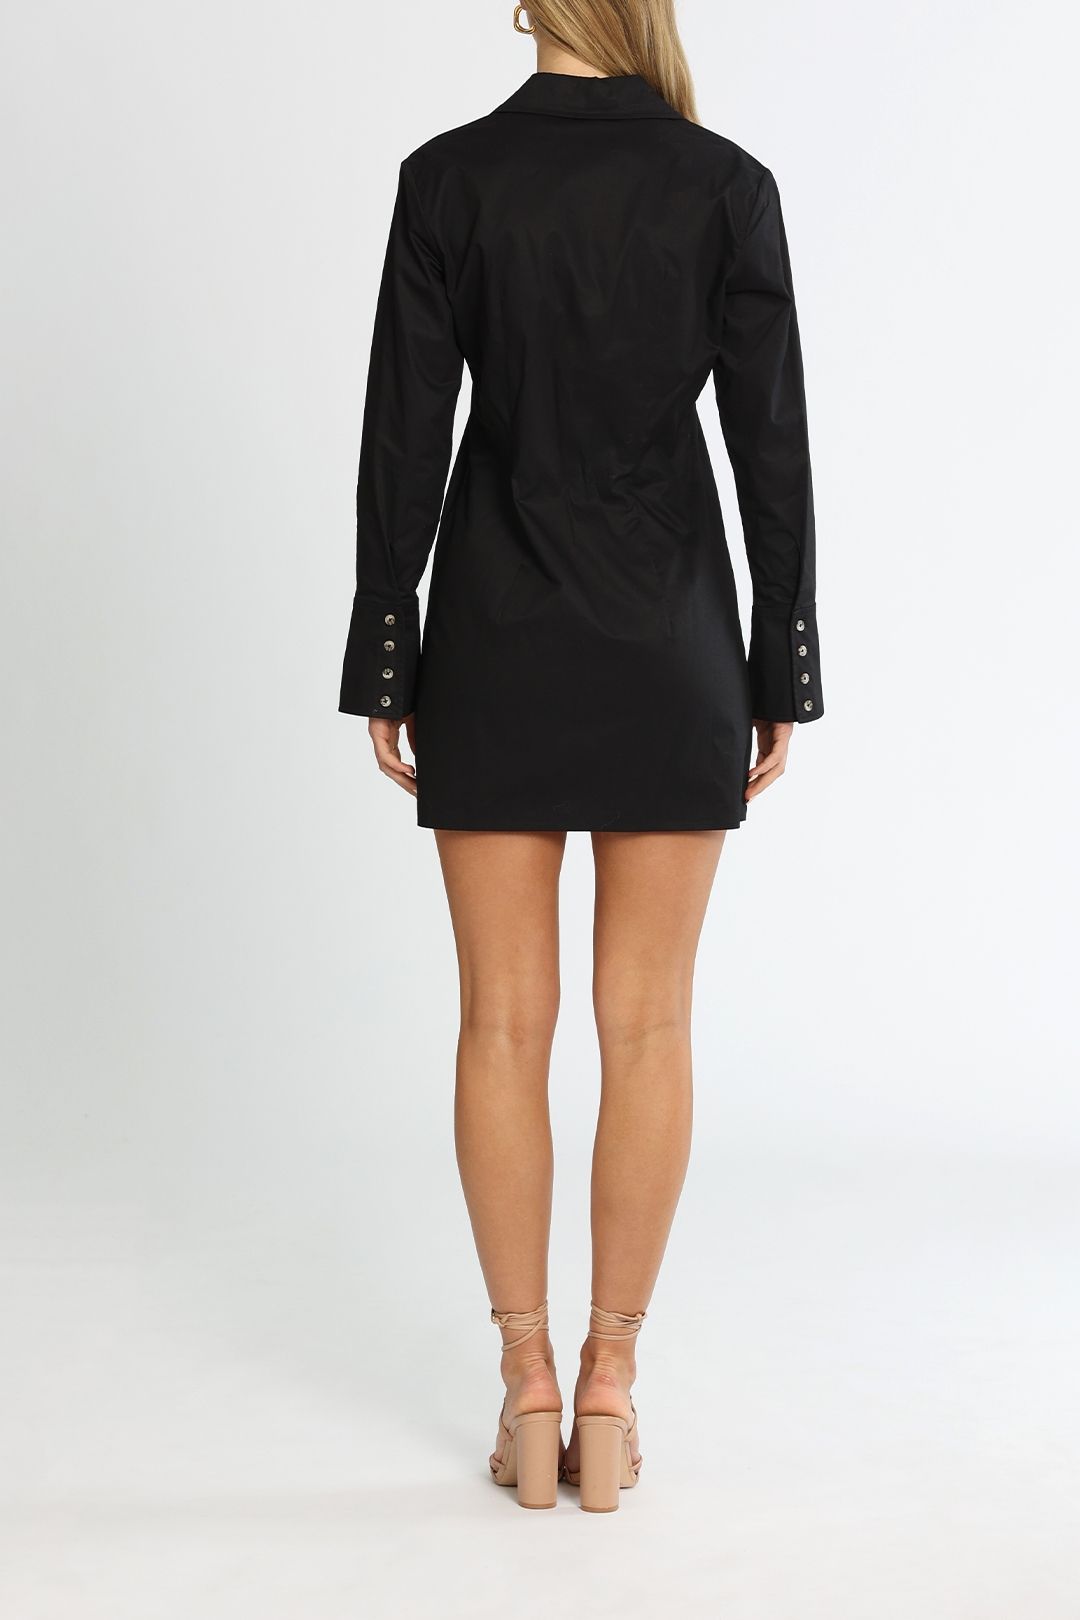 Anine Bing Tiffany Dress Black Mini